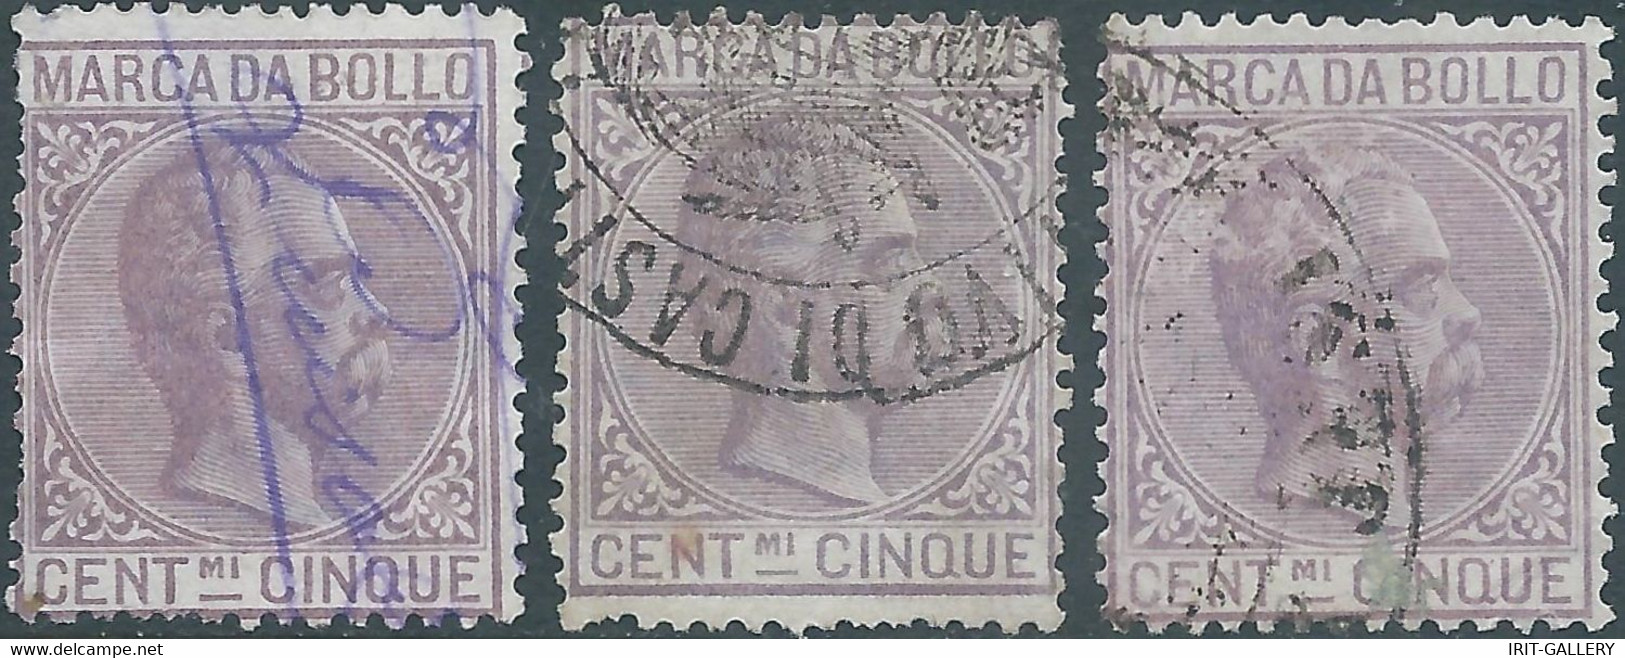 ITALIA-ITALY-ITALIEN,1882 Marca Da Bollo,Revenue Fiscal -Tax,3x 5Cent,Used - Fiscales